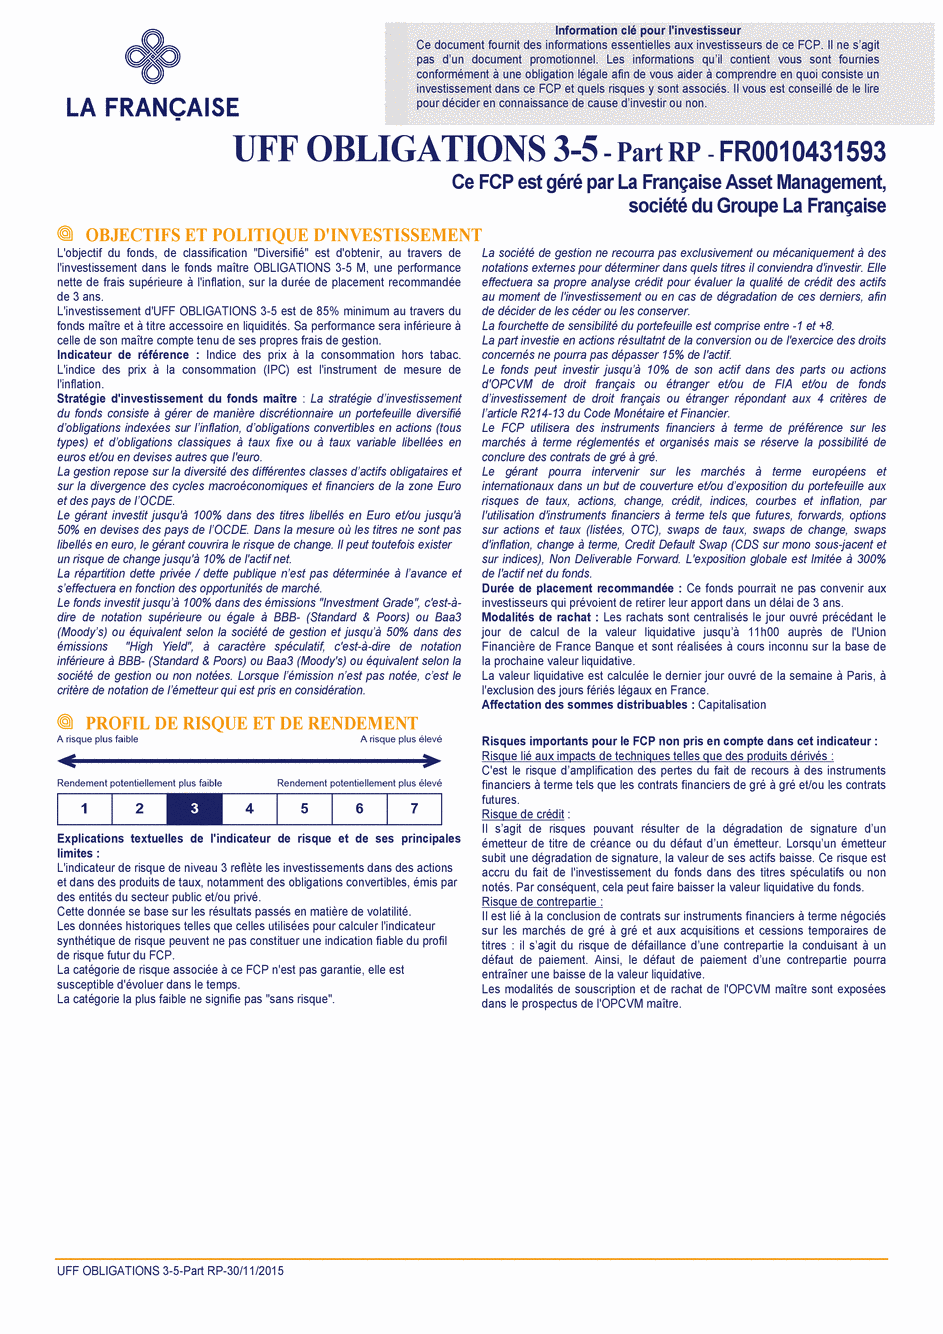 DICI UFF Obligations 3-5 (Part RP) - 30/11/2015 - Français